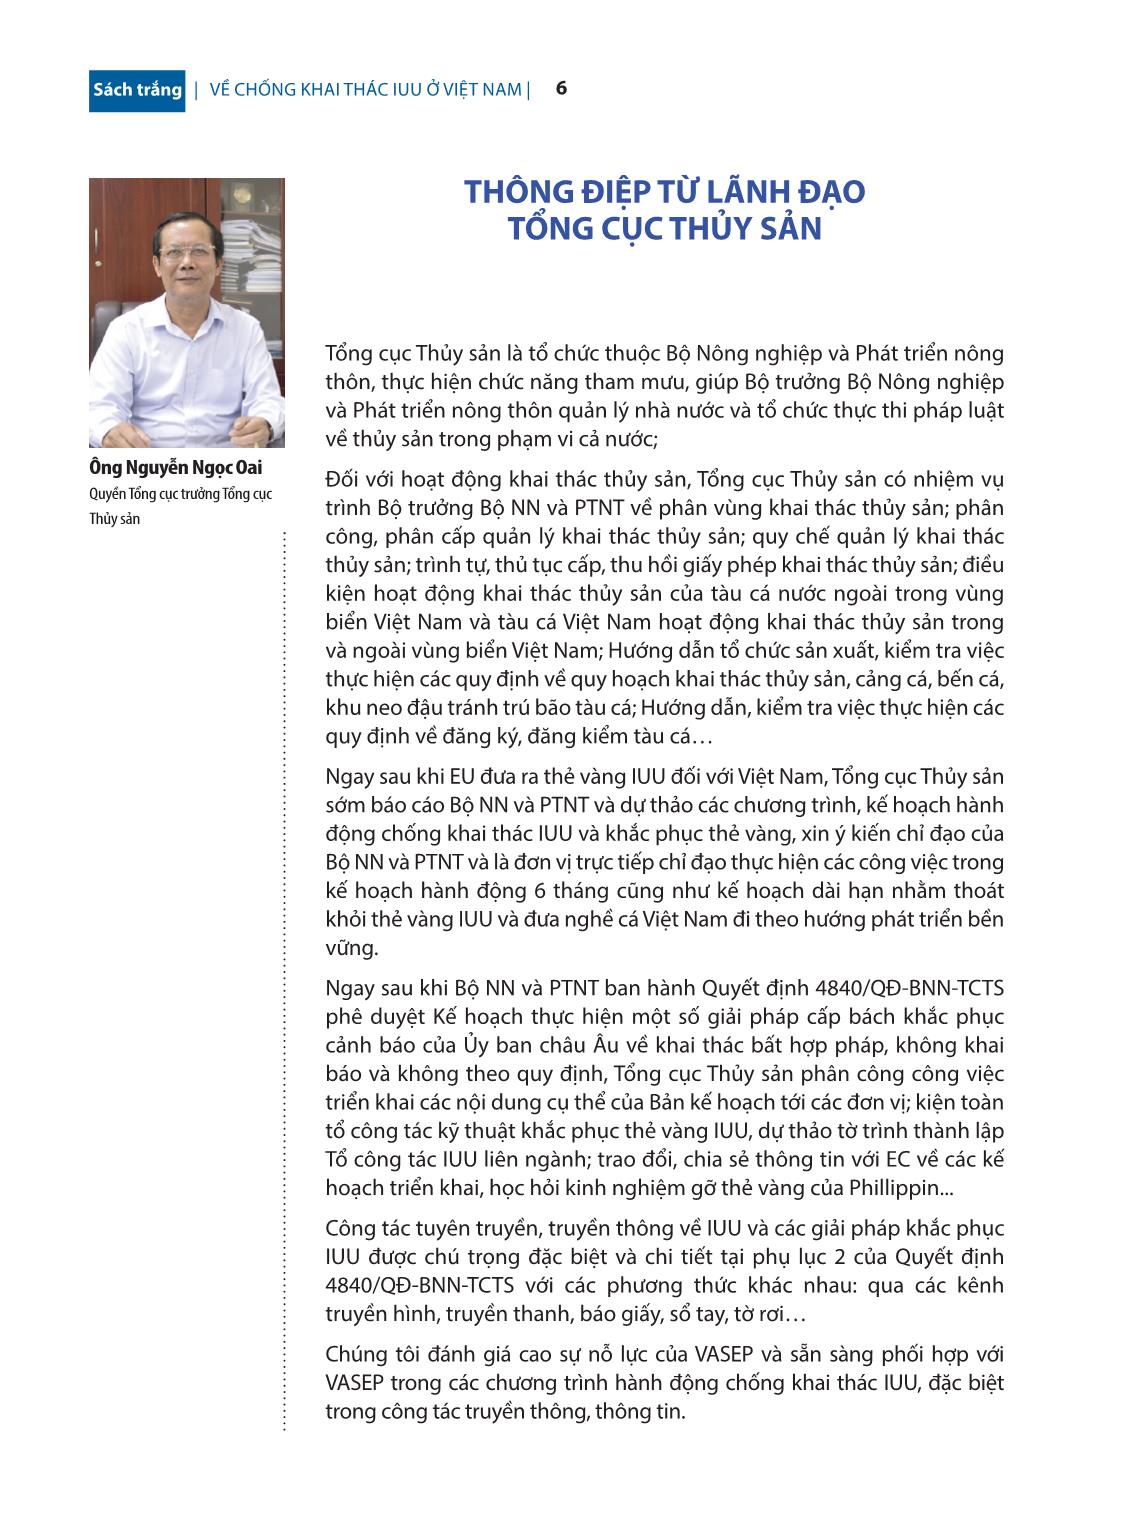 Sách trắng về chống khai thác IUU ở Việt Nam trang 7